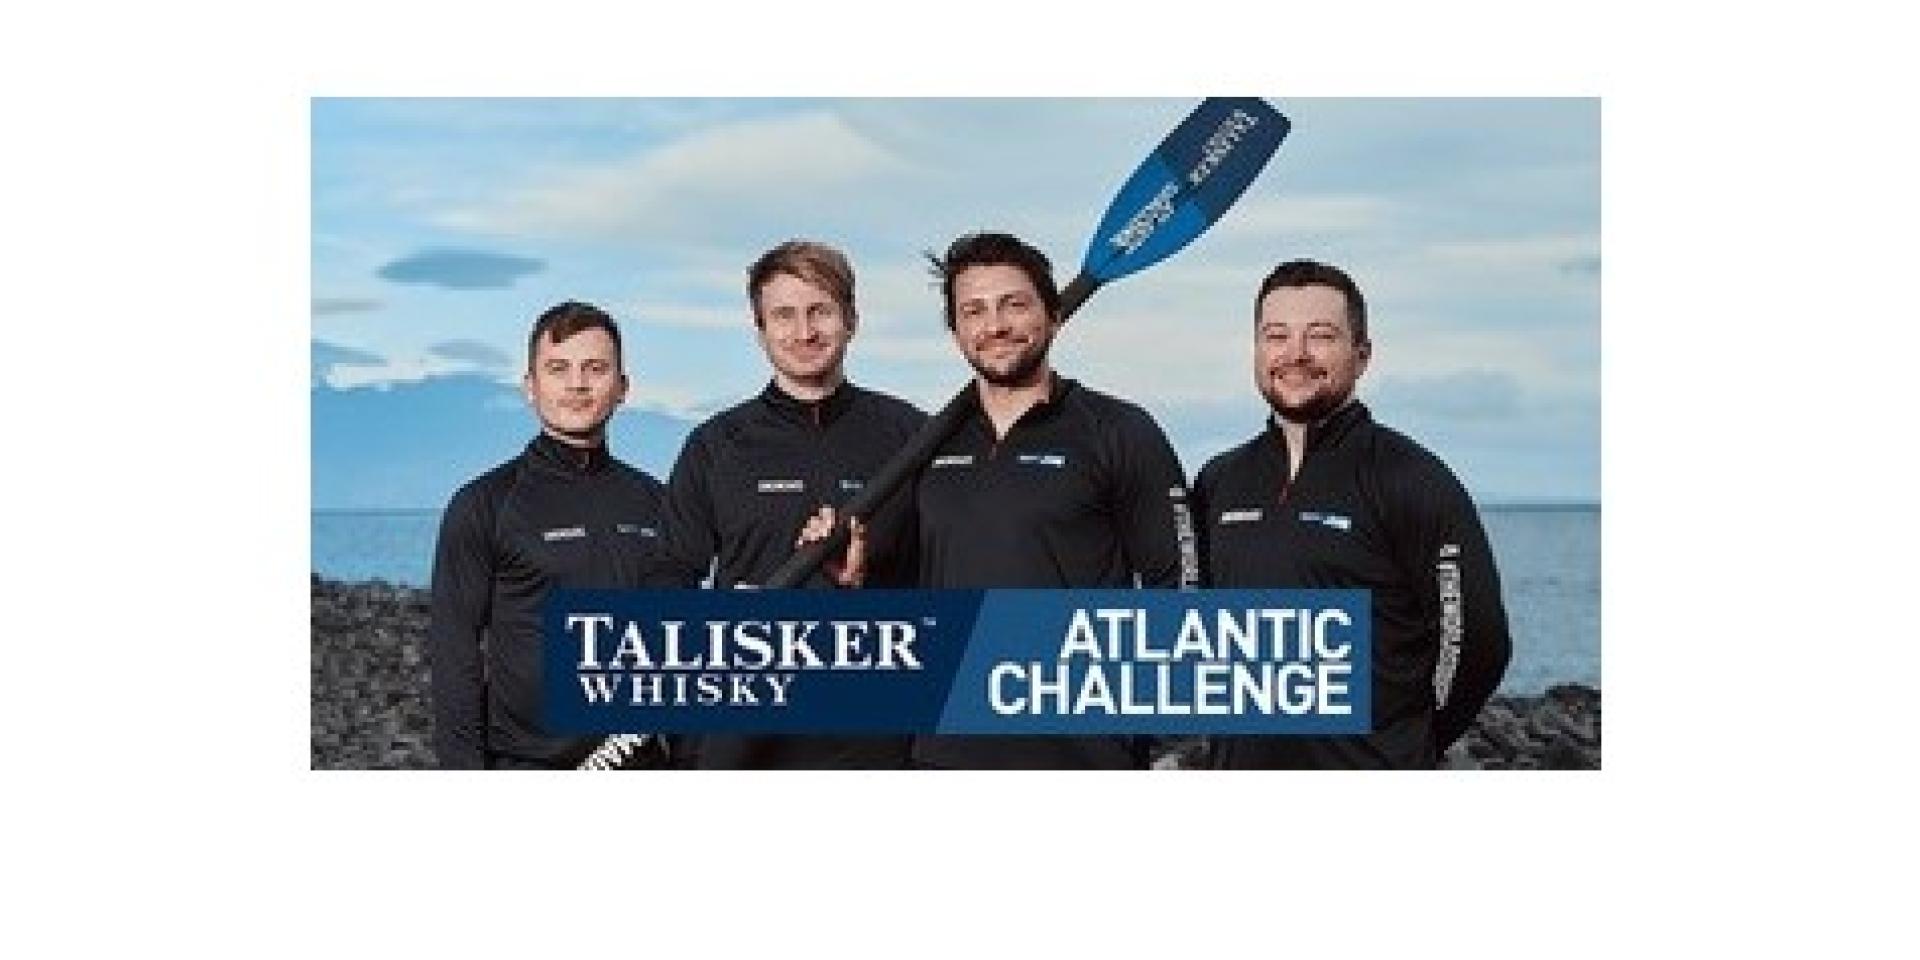 Atlantic Challenge - Talisker